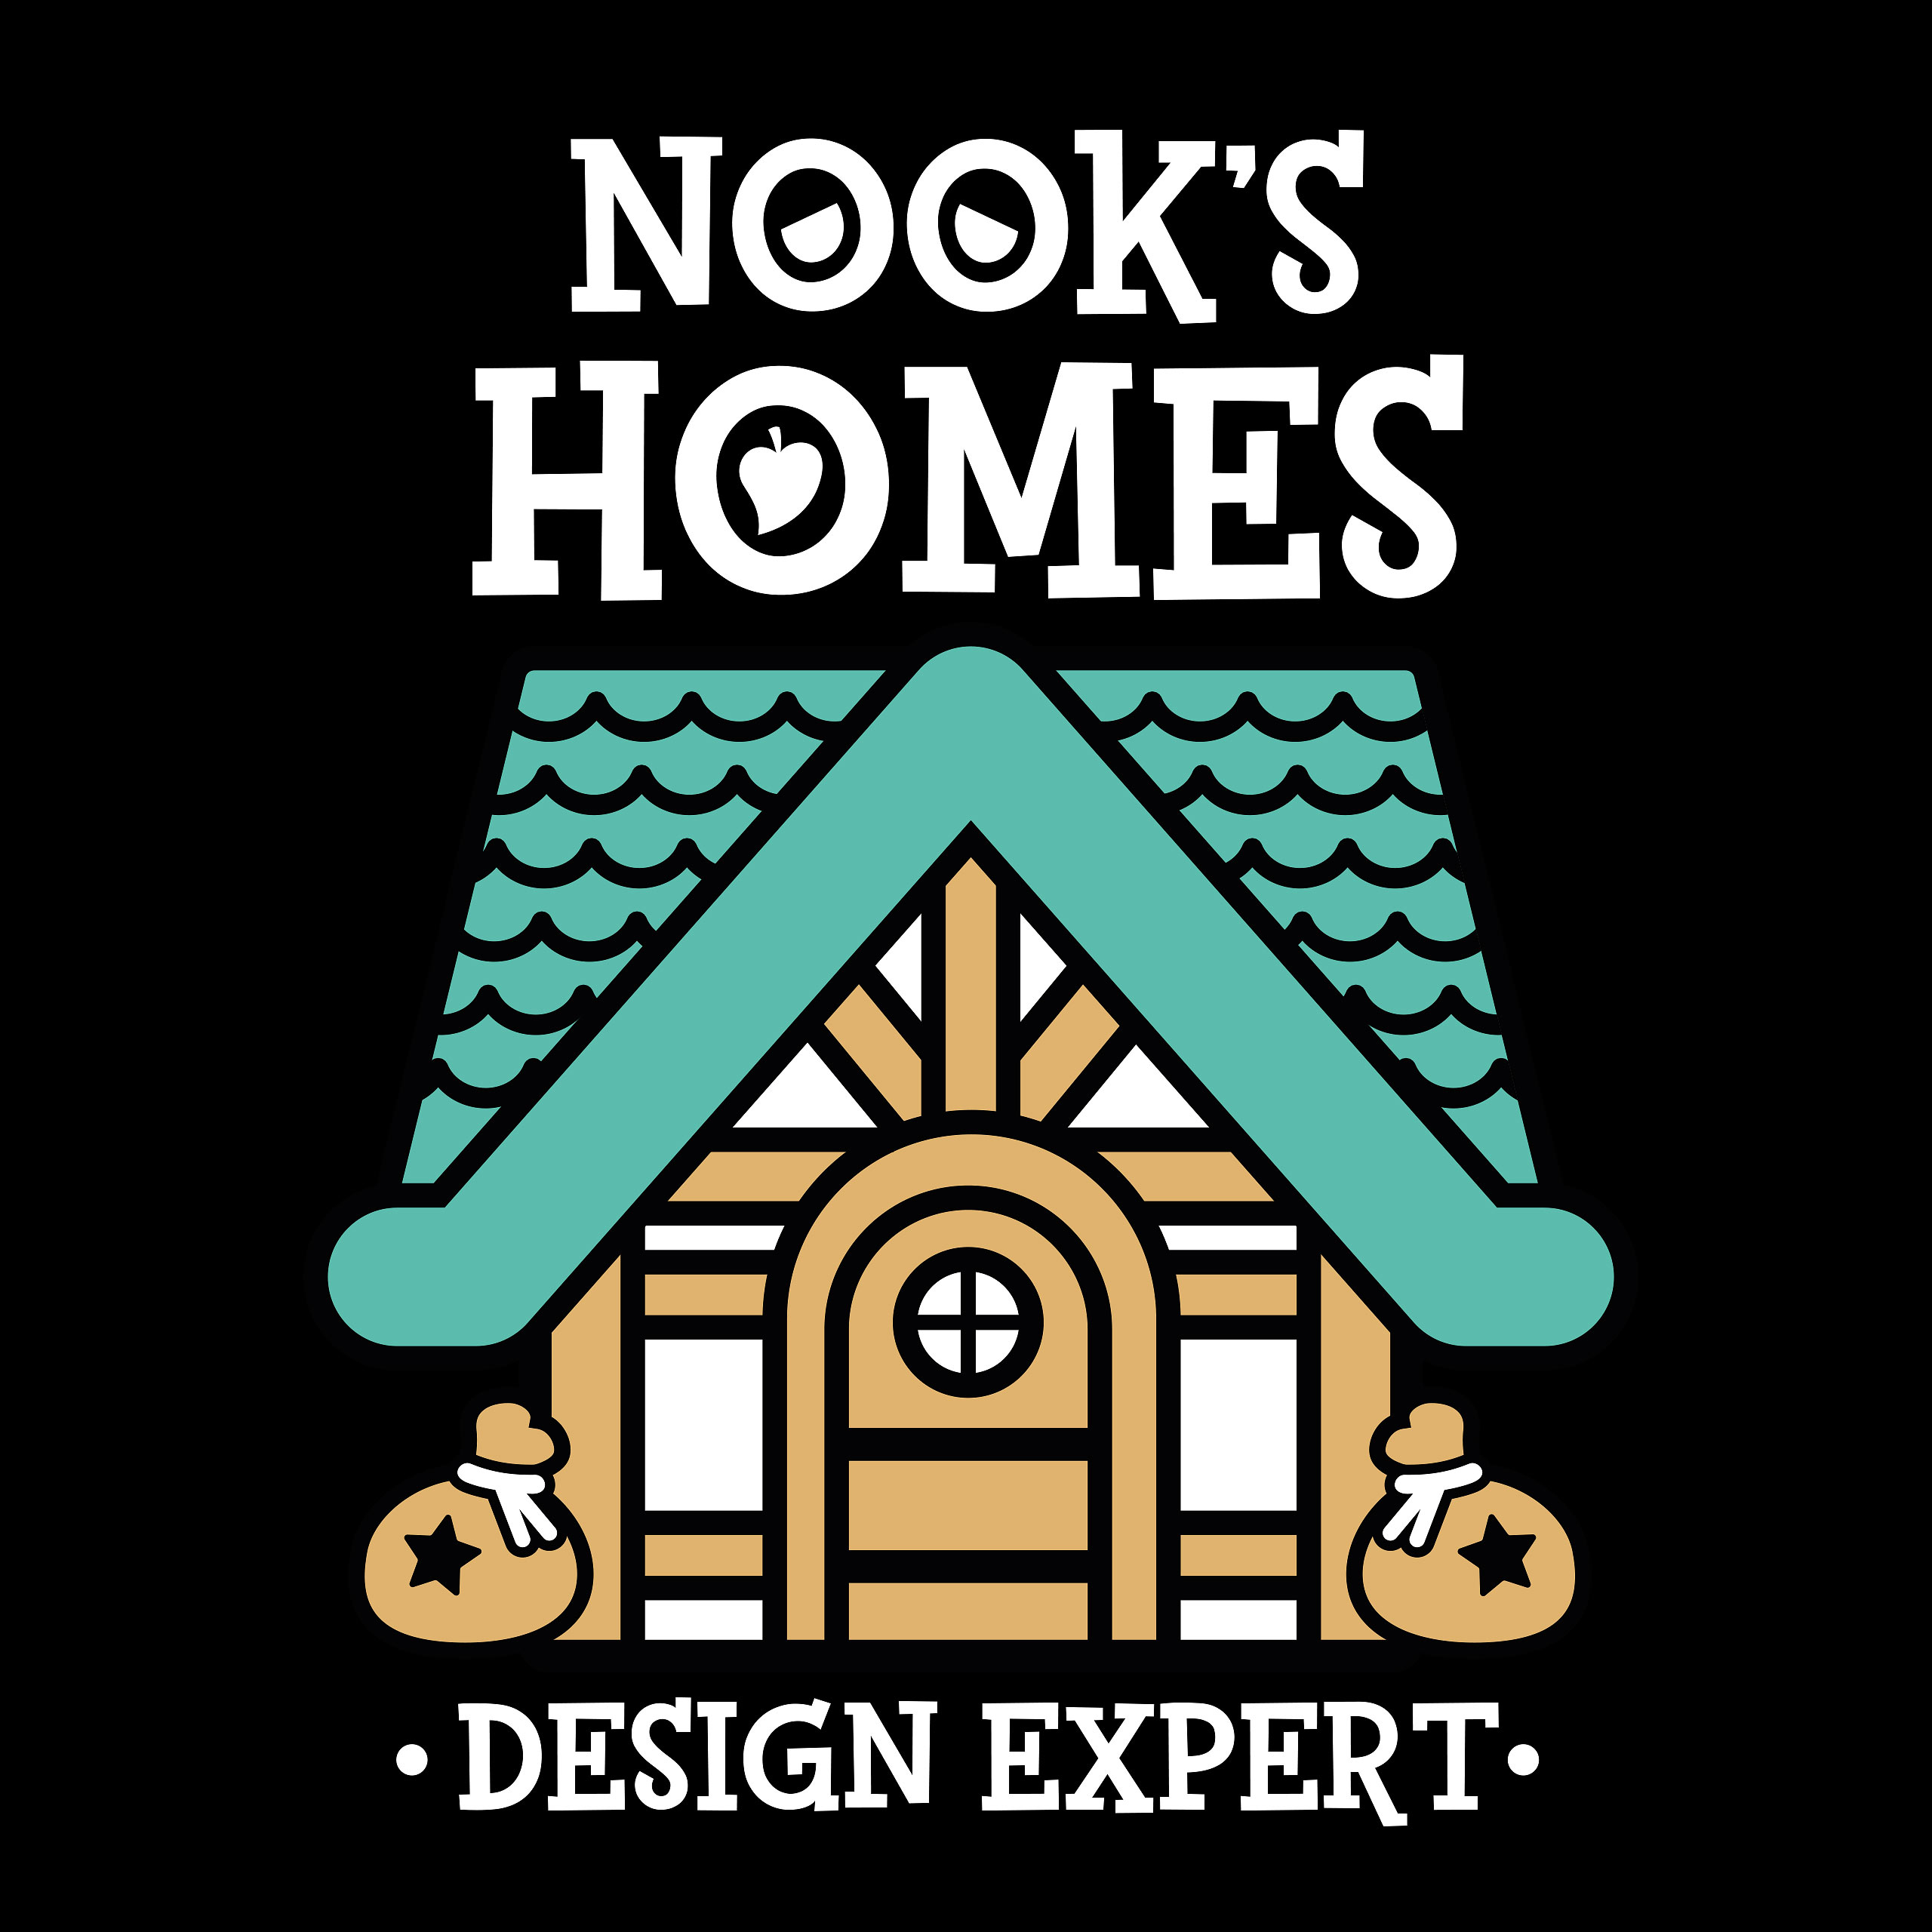 Nook's Homes T-Shirt für Animal Crossing Fans schwarz